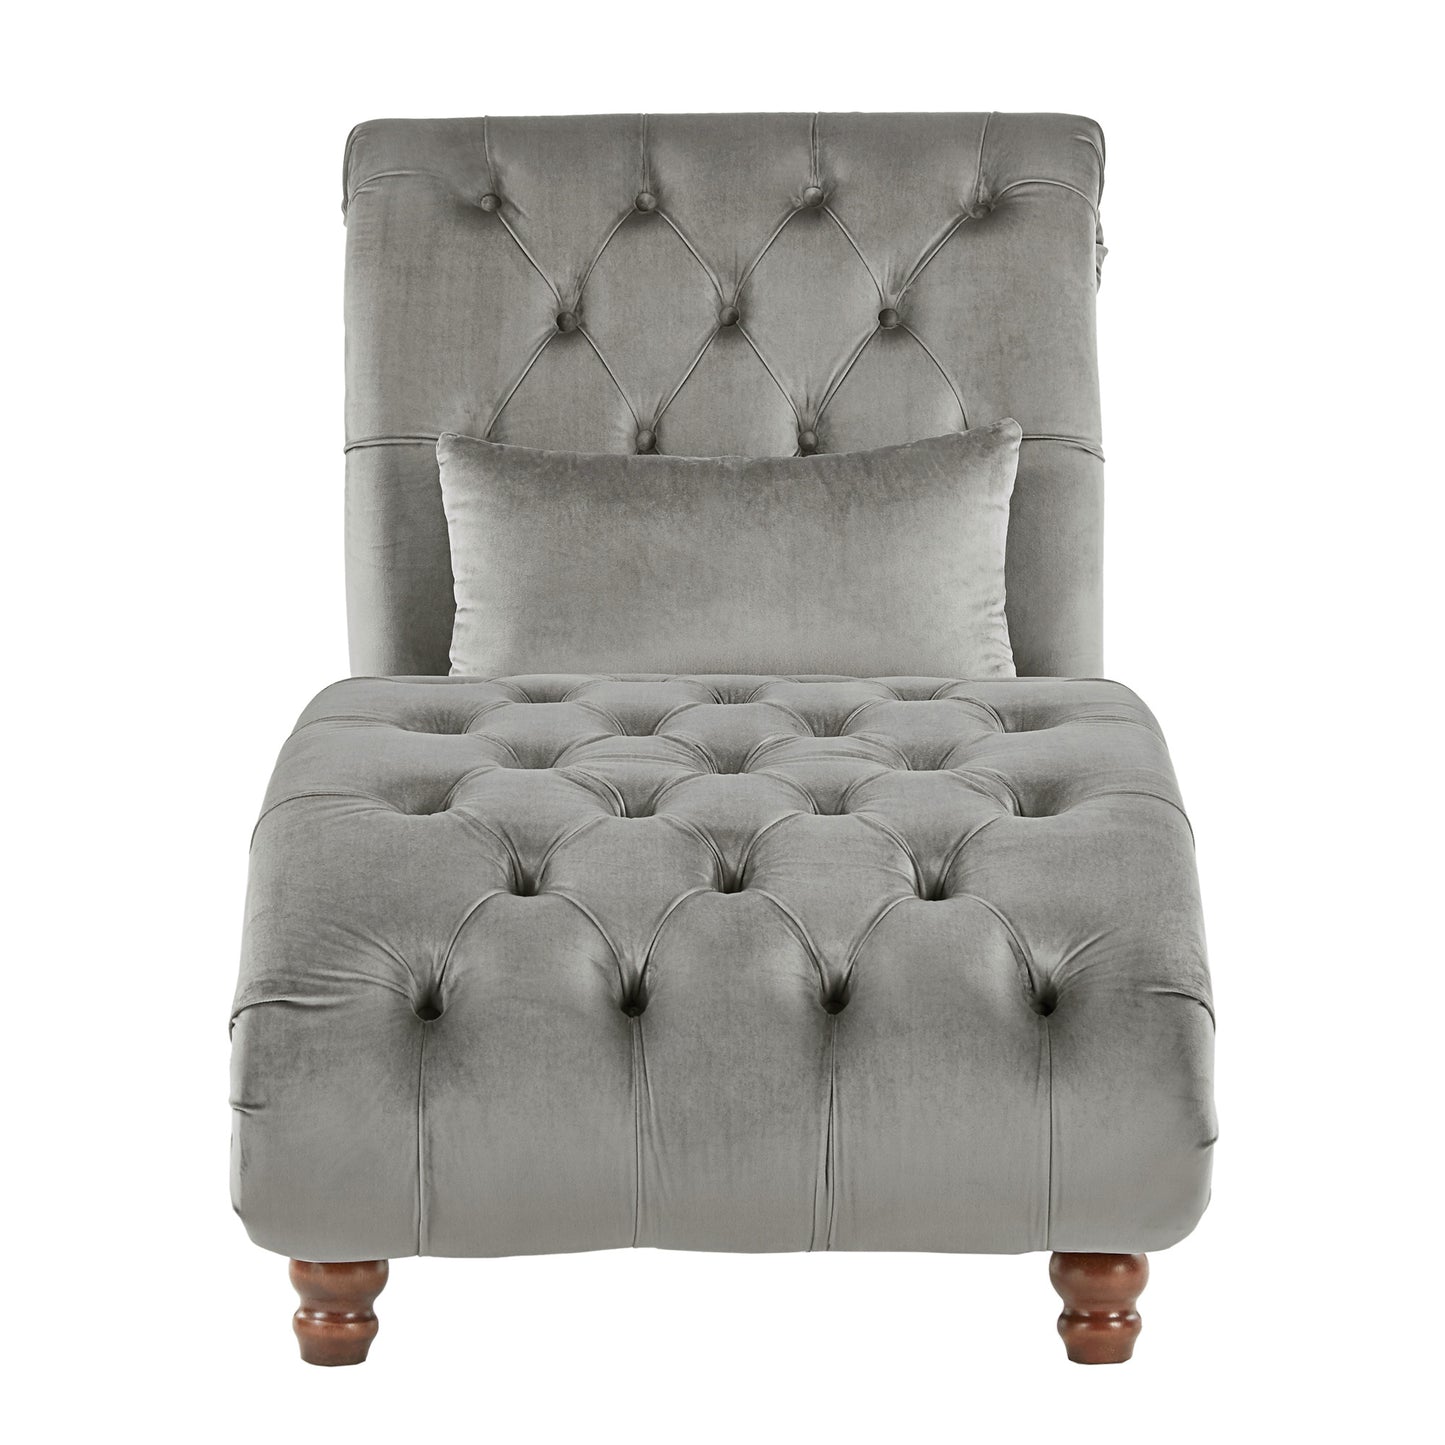 Tufted Oversized Chaise Lounge - Grey Velvet